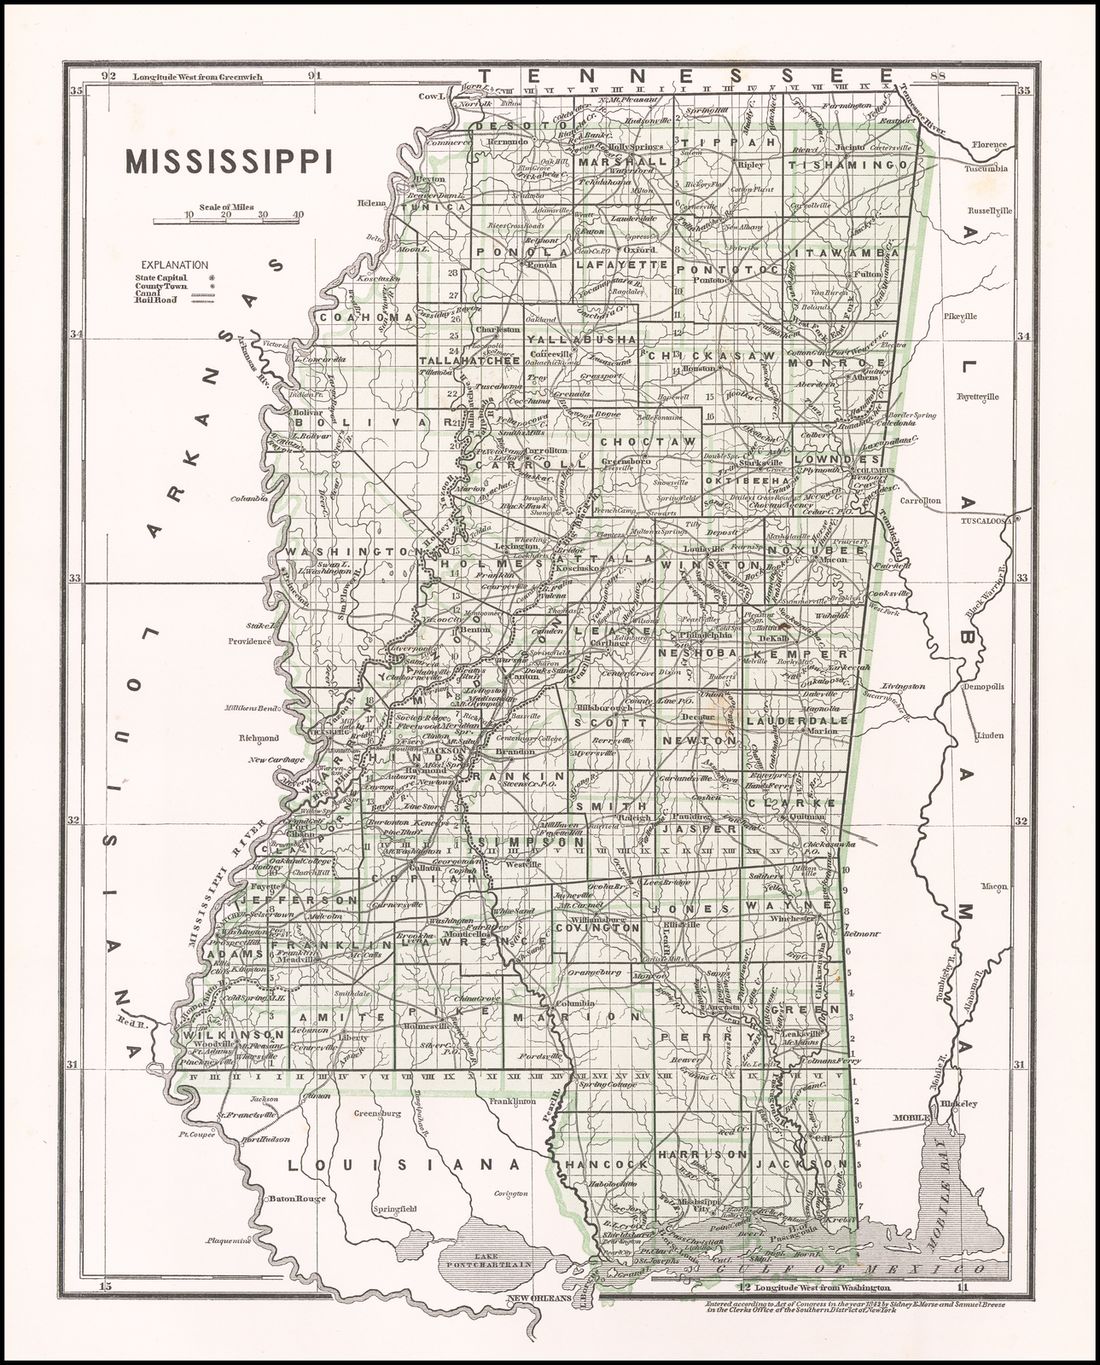 1842 map showing Peyton